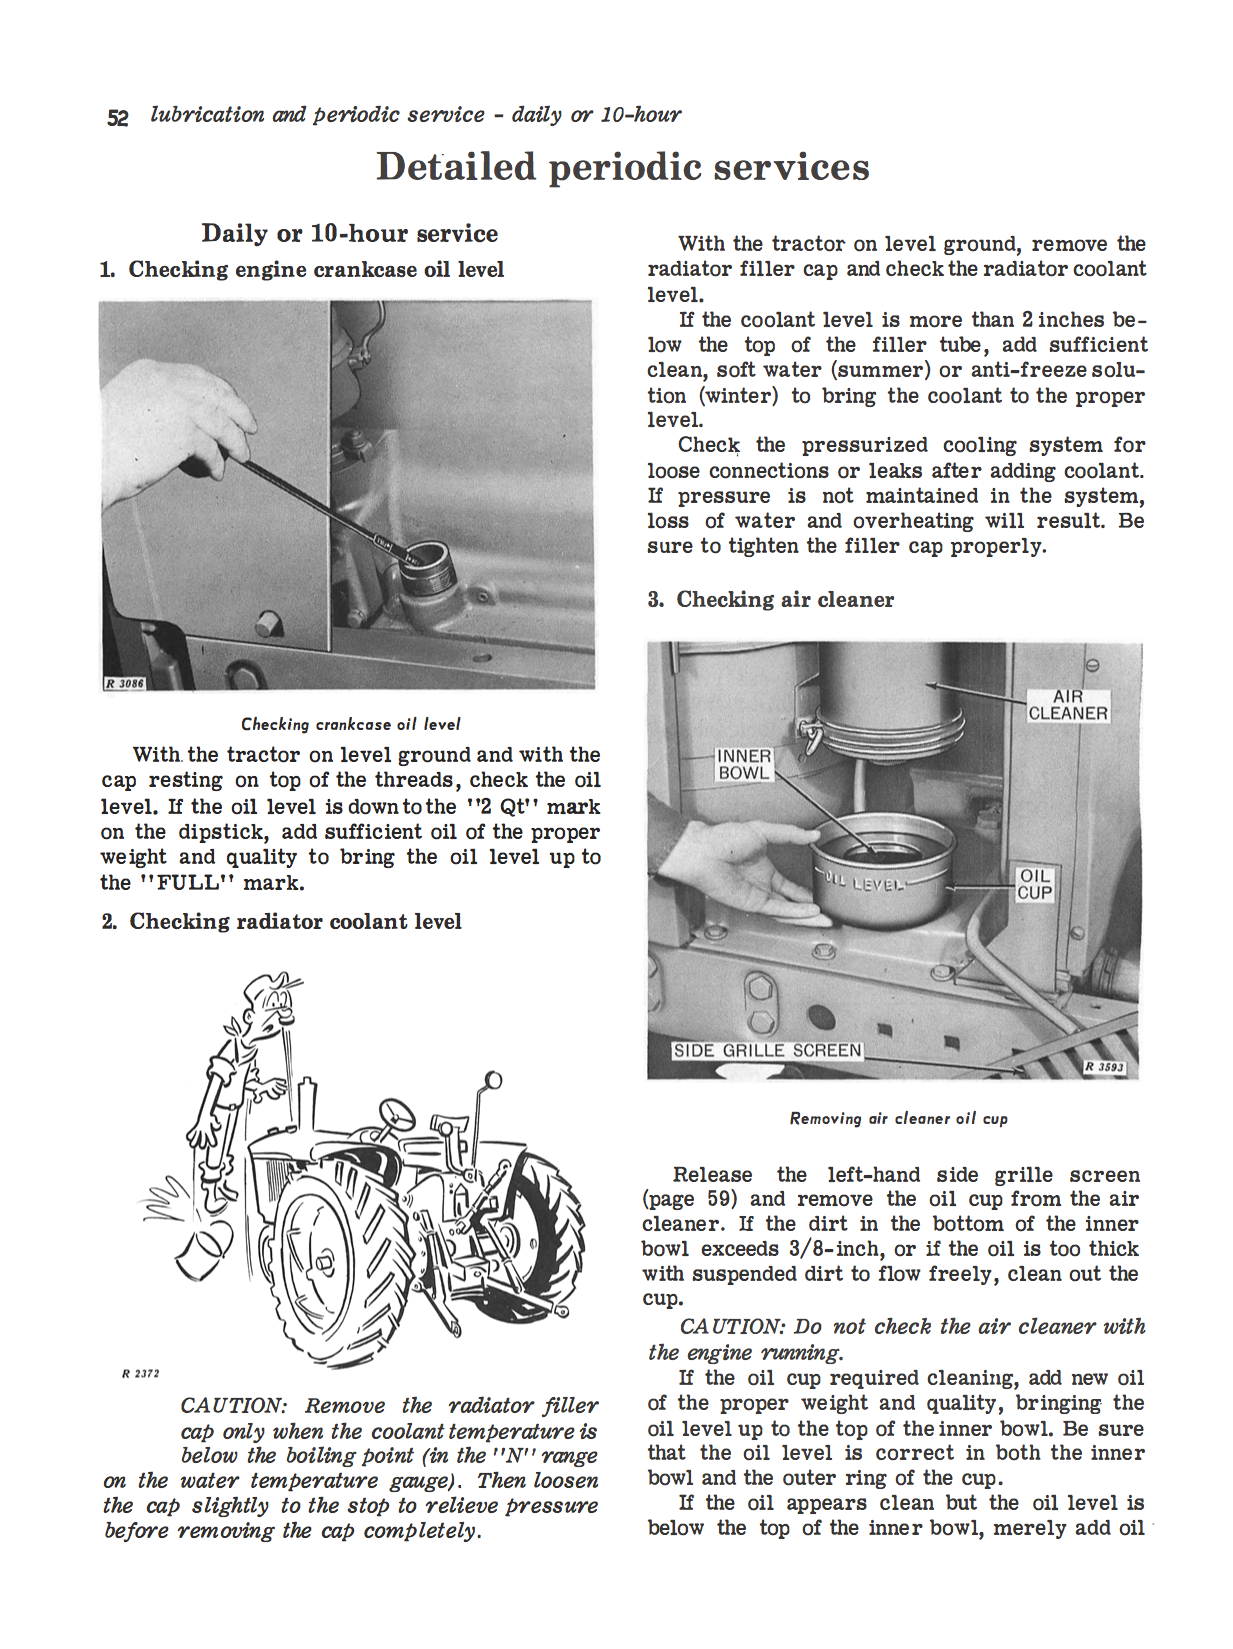 John Deere 3010 Row-Crop Utility Gasoline Tractors - Operator's Manual - Ag Manuals - A Provider of Digital Farm Manuals - 2